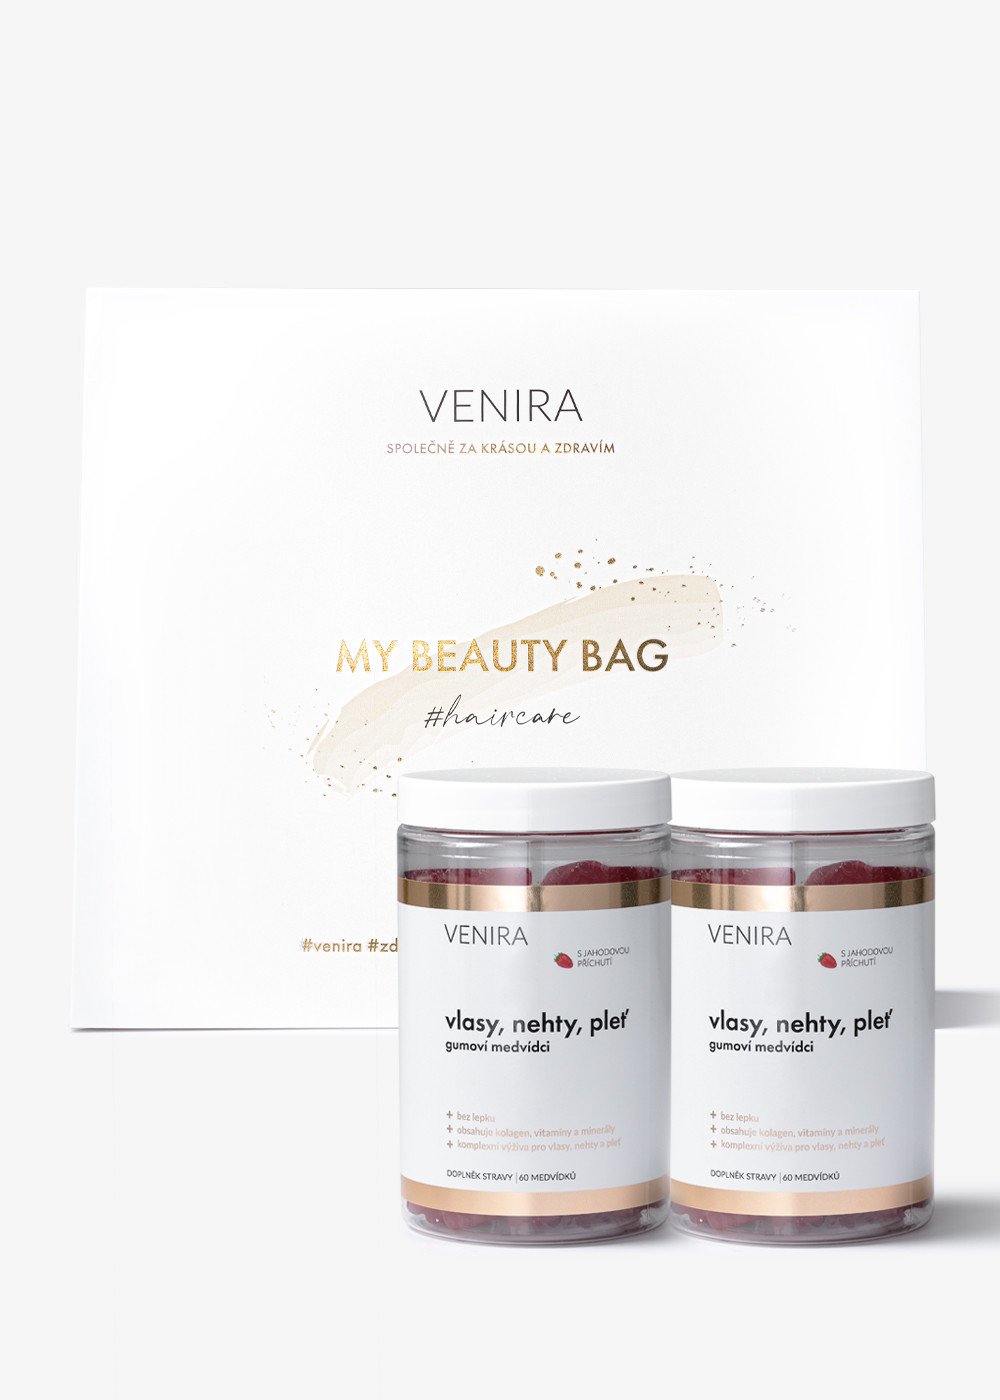 VENIRA beauty bag - 2x gumoví medvídci pro vlasy, nehty a pleť, jahoda, 120 kusů